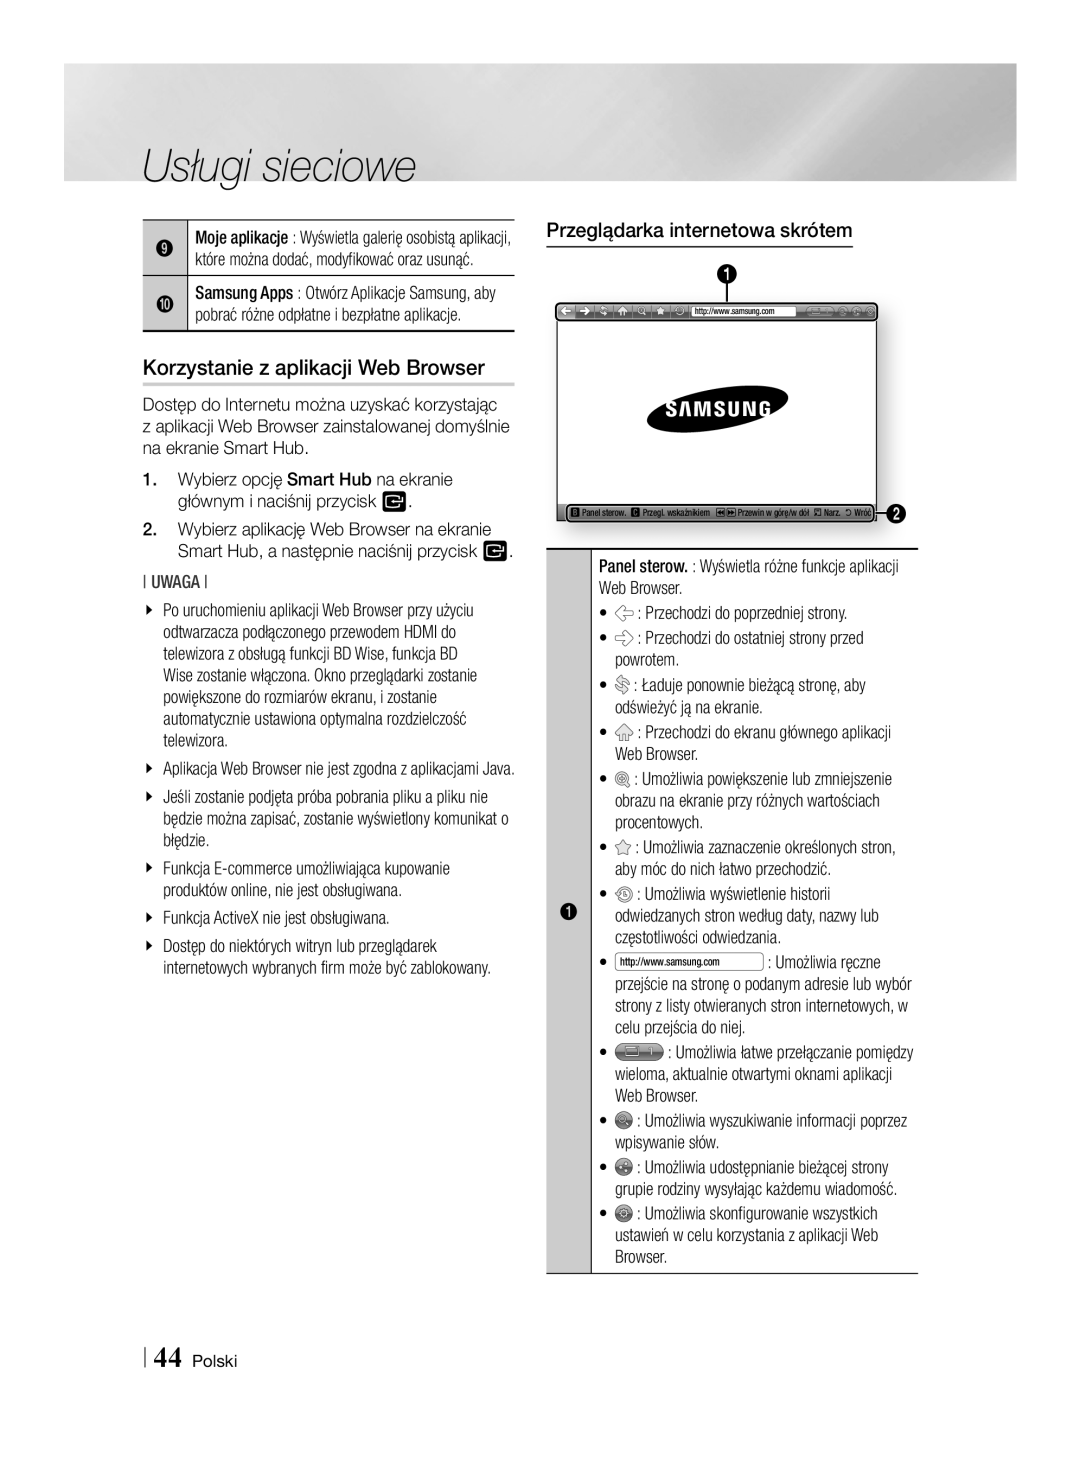 Samsung BD-E6100/EN Korzystanie z aplikacji Web Browser, Przeglądarka internetowa skrótem, Umożliwia wyświetlenie historii 